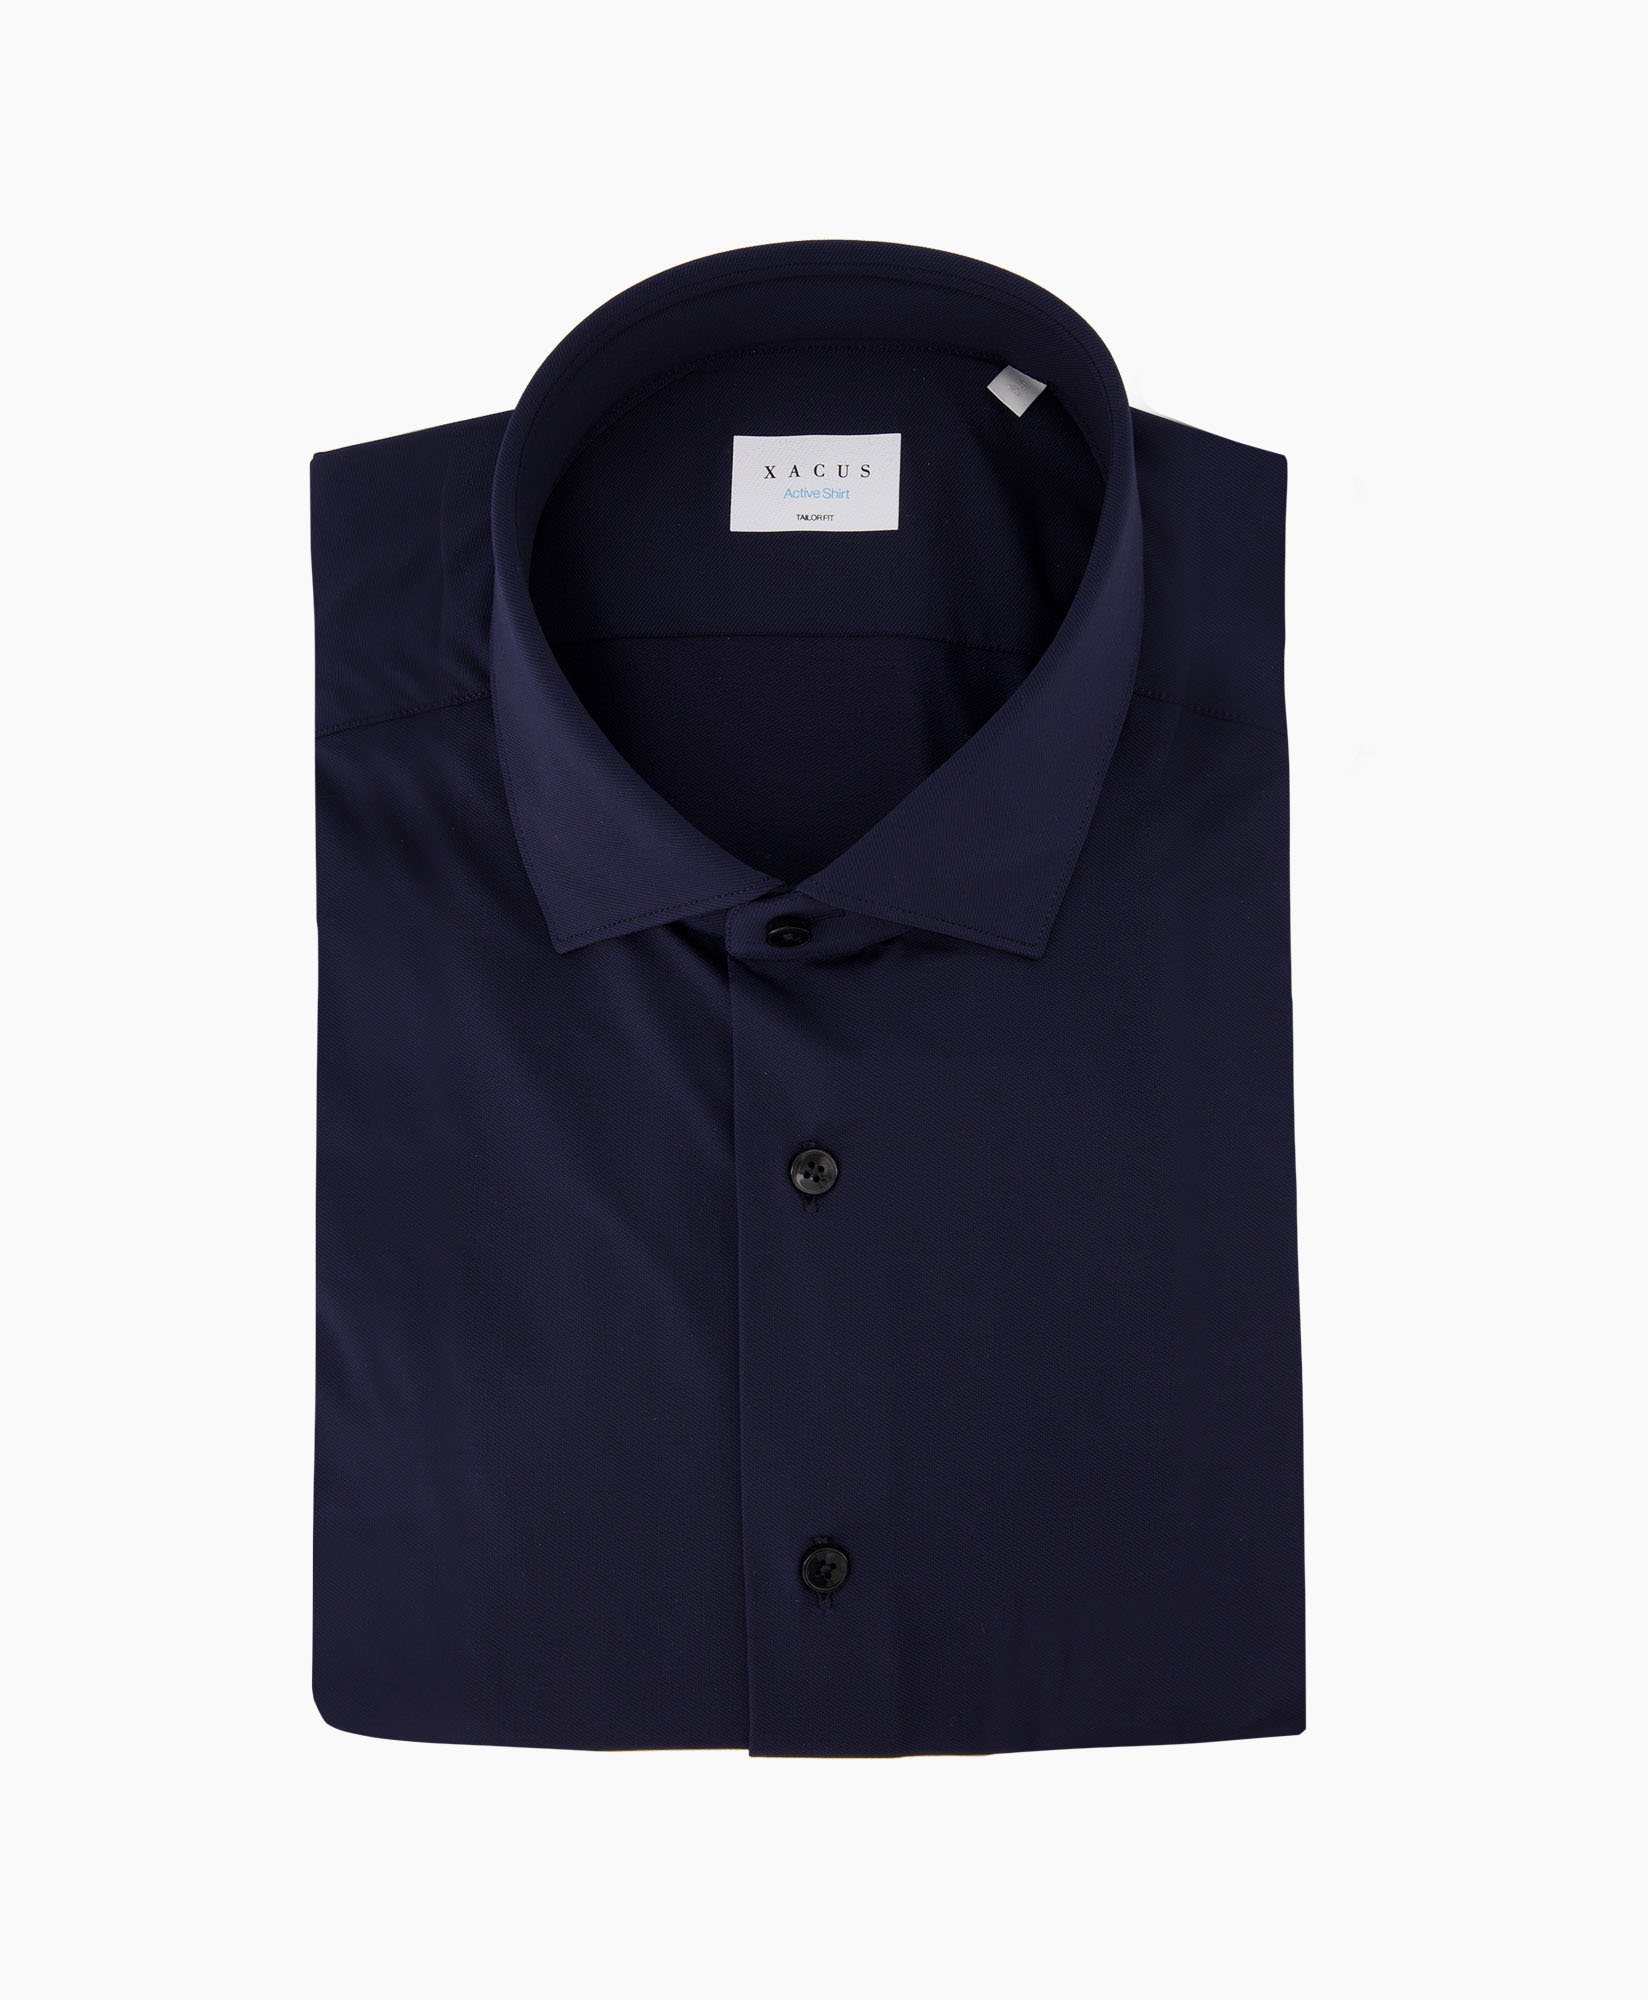 Xacus Overhemd 11460/558  Donker Blauw